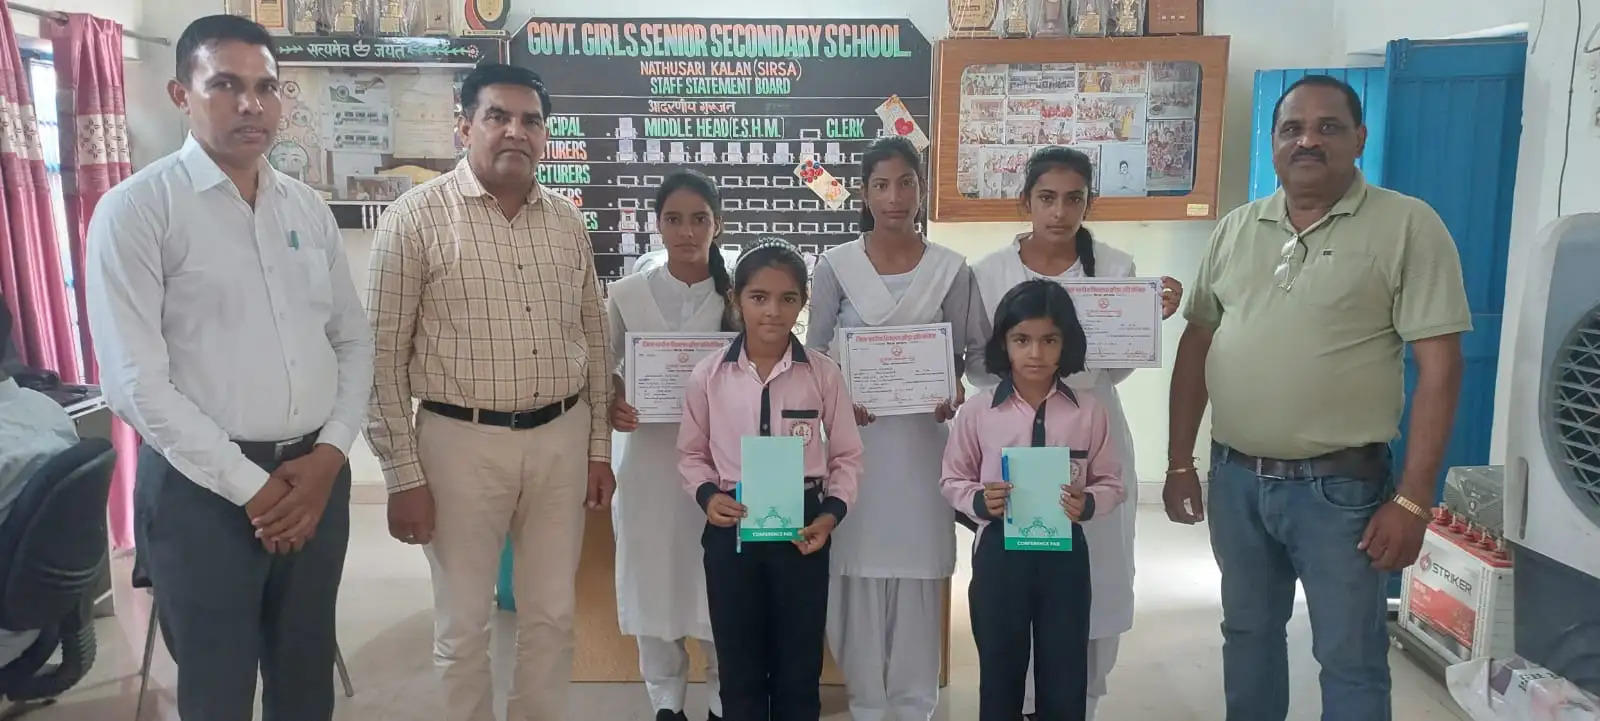 हिंदी दिवस पर हुई प्रतियोगिताओं में अव्वल रही छात्राओं को किया सम्मानित